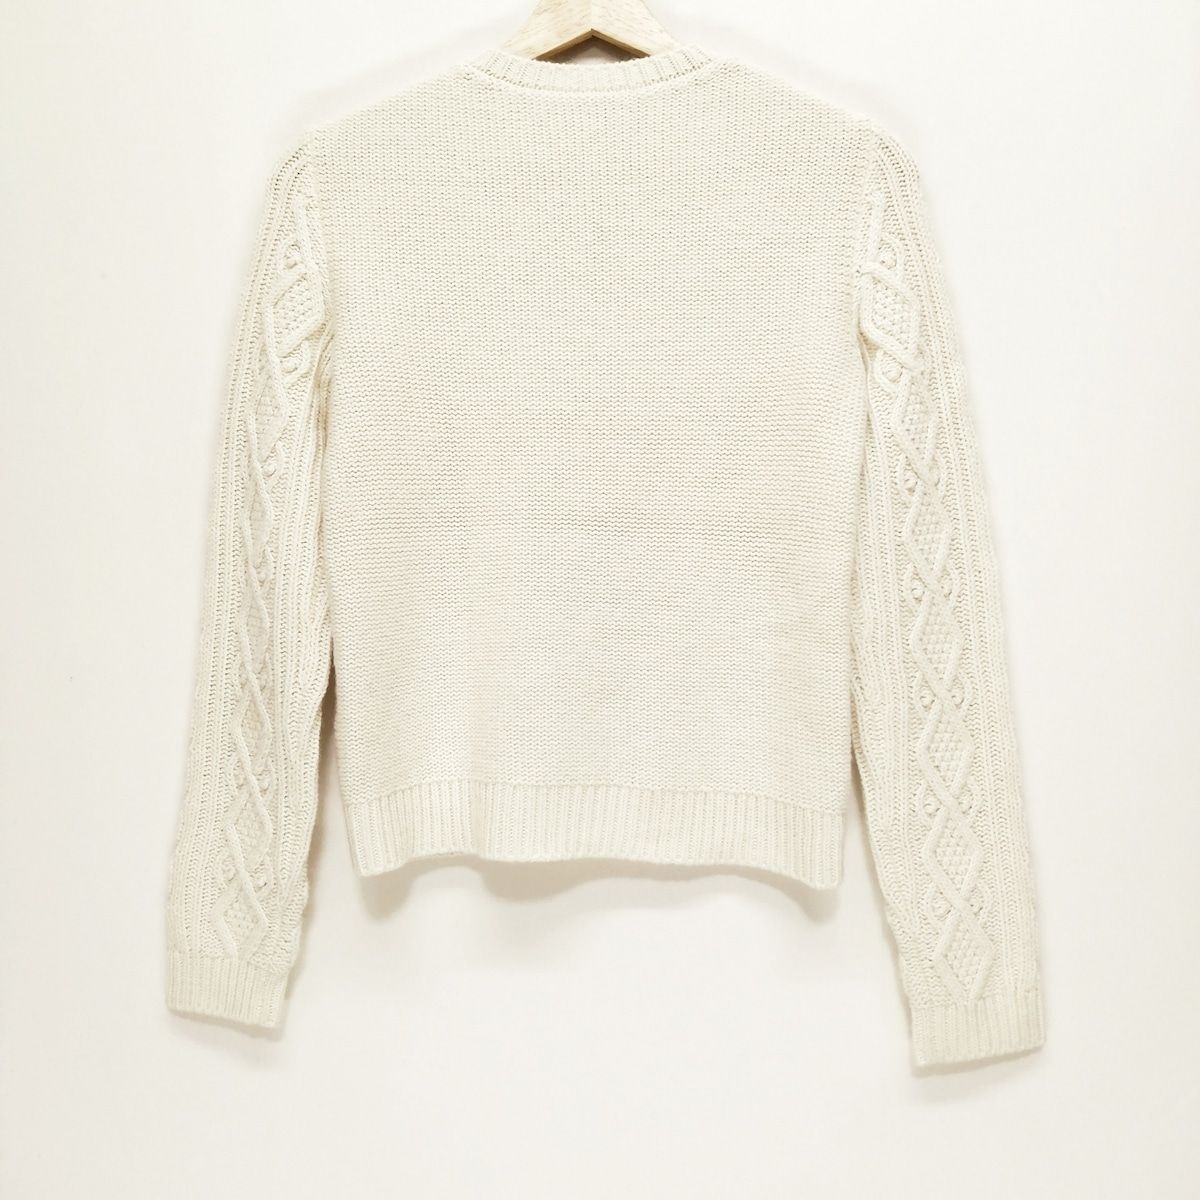 トップスバレンチノ 長袖セーター サイズXS - - ニット/セーター